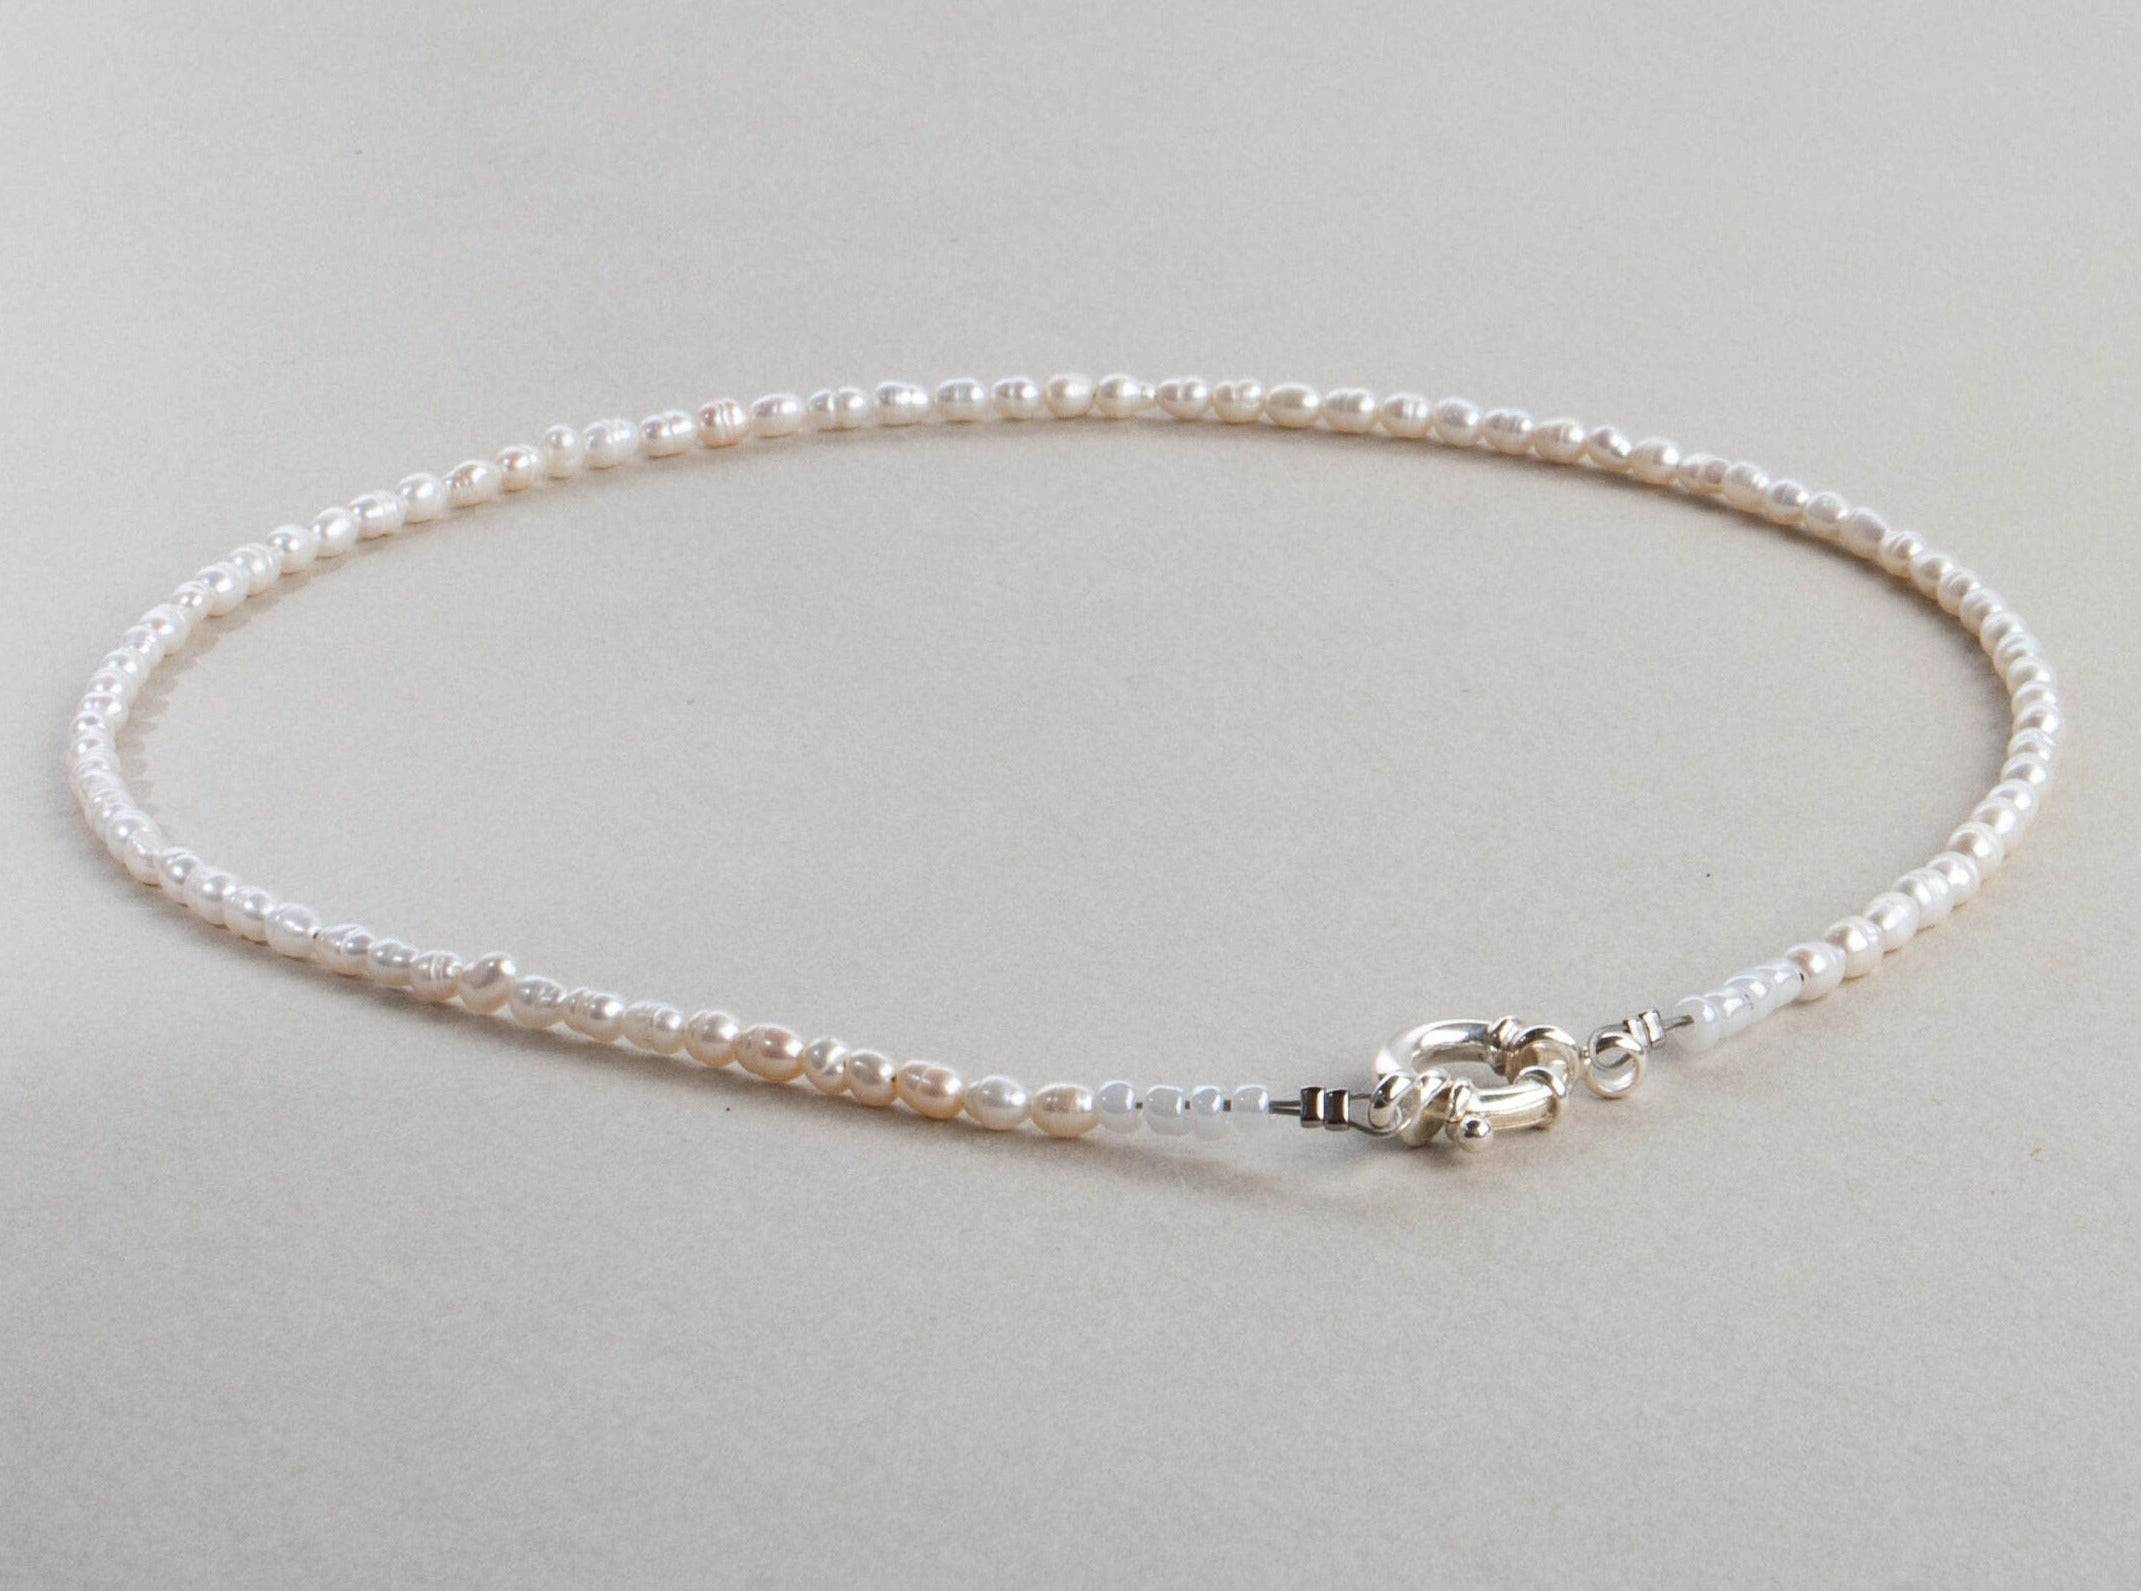 Perlenkette Choker Kette weiß silber handgemacht - NooeBerlin